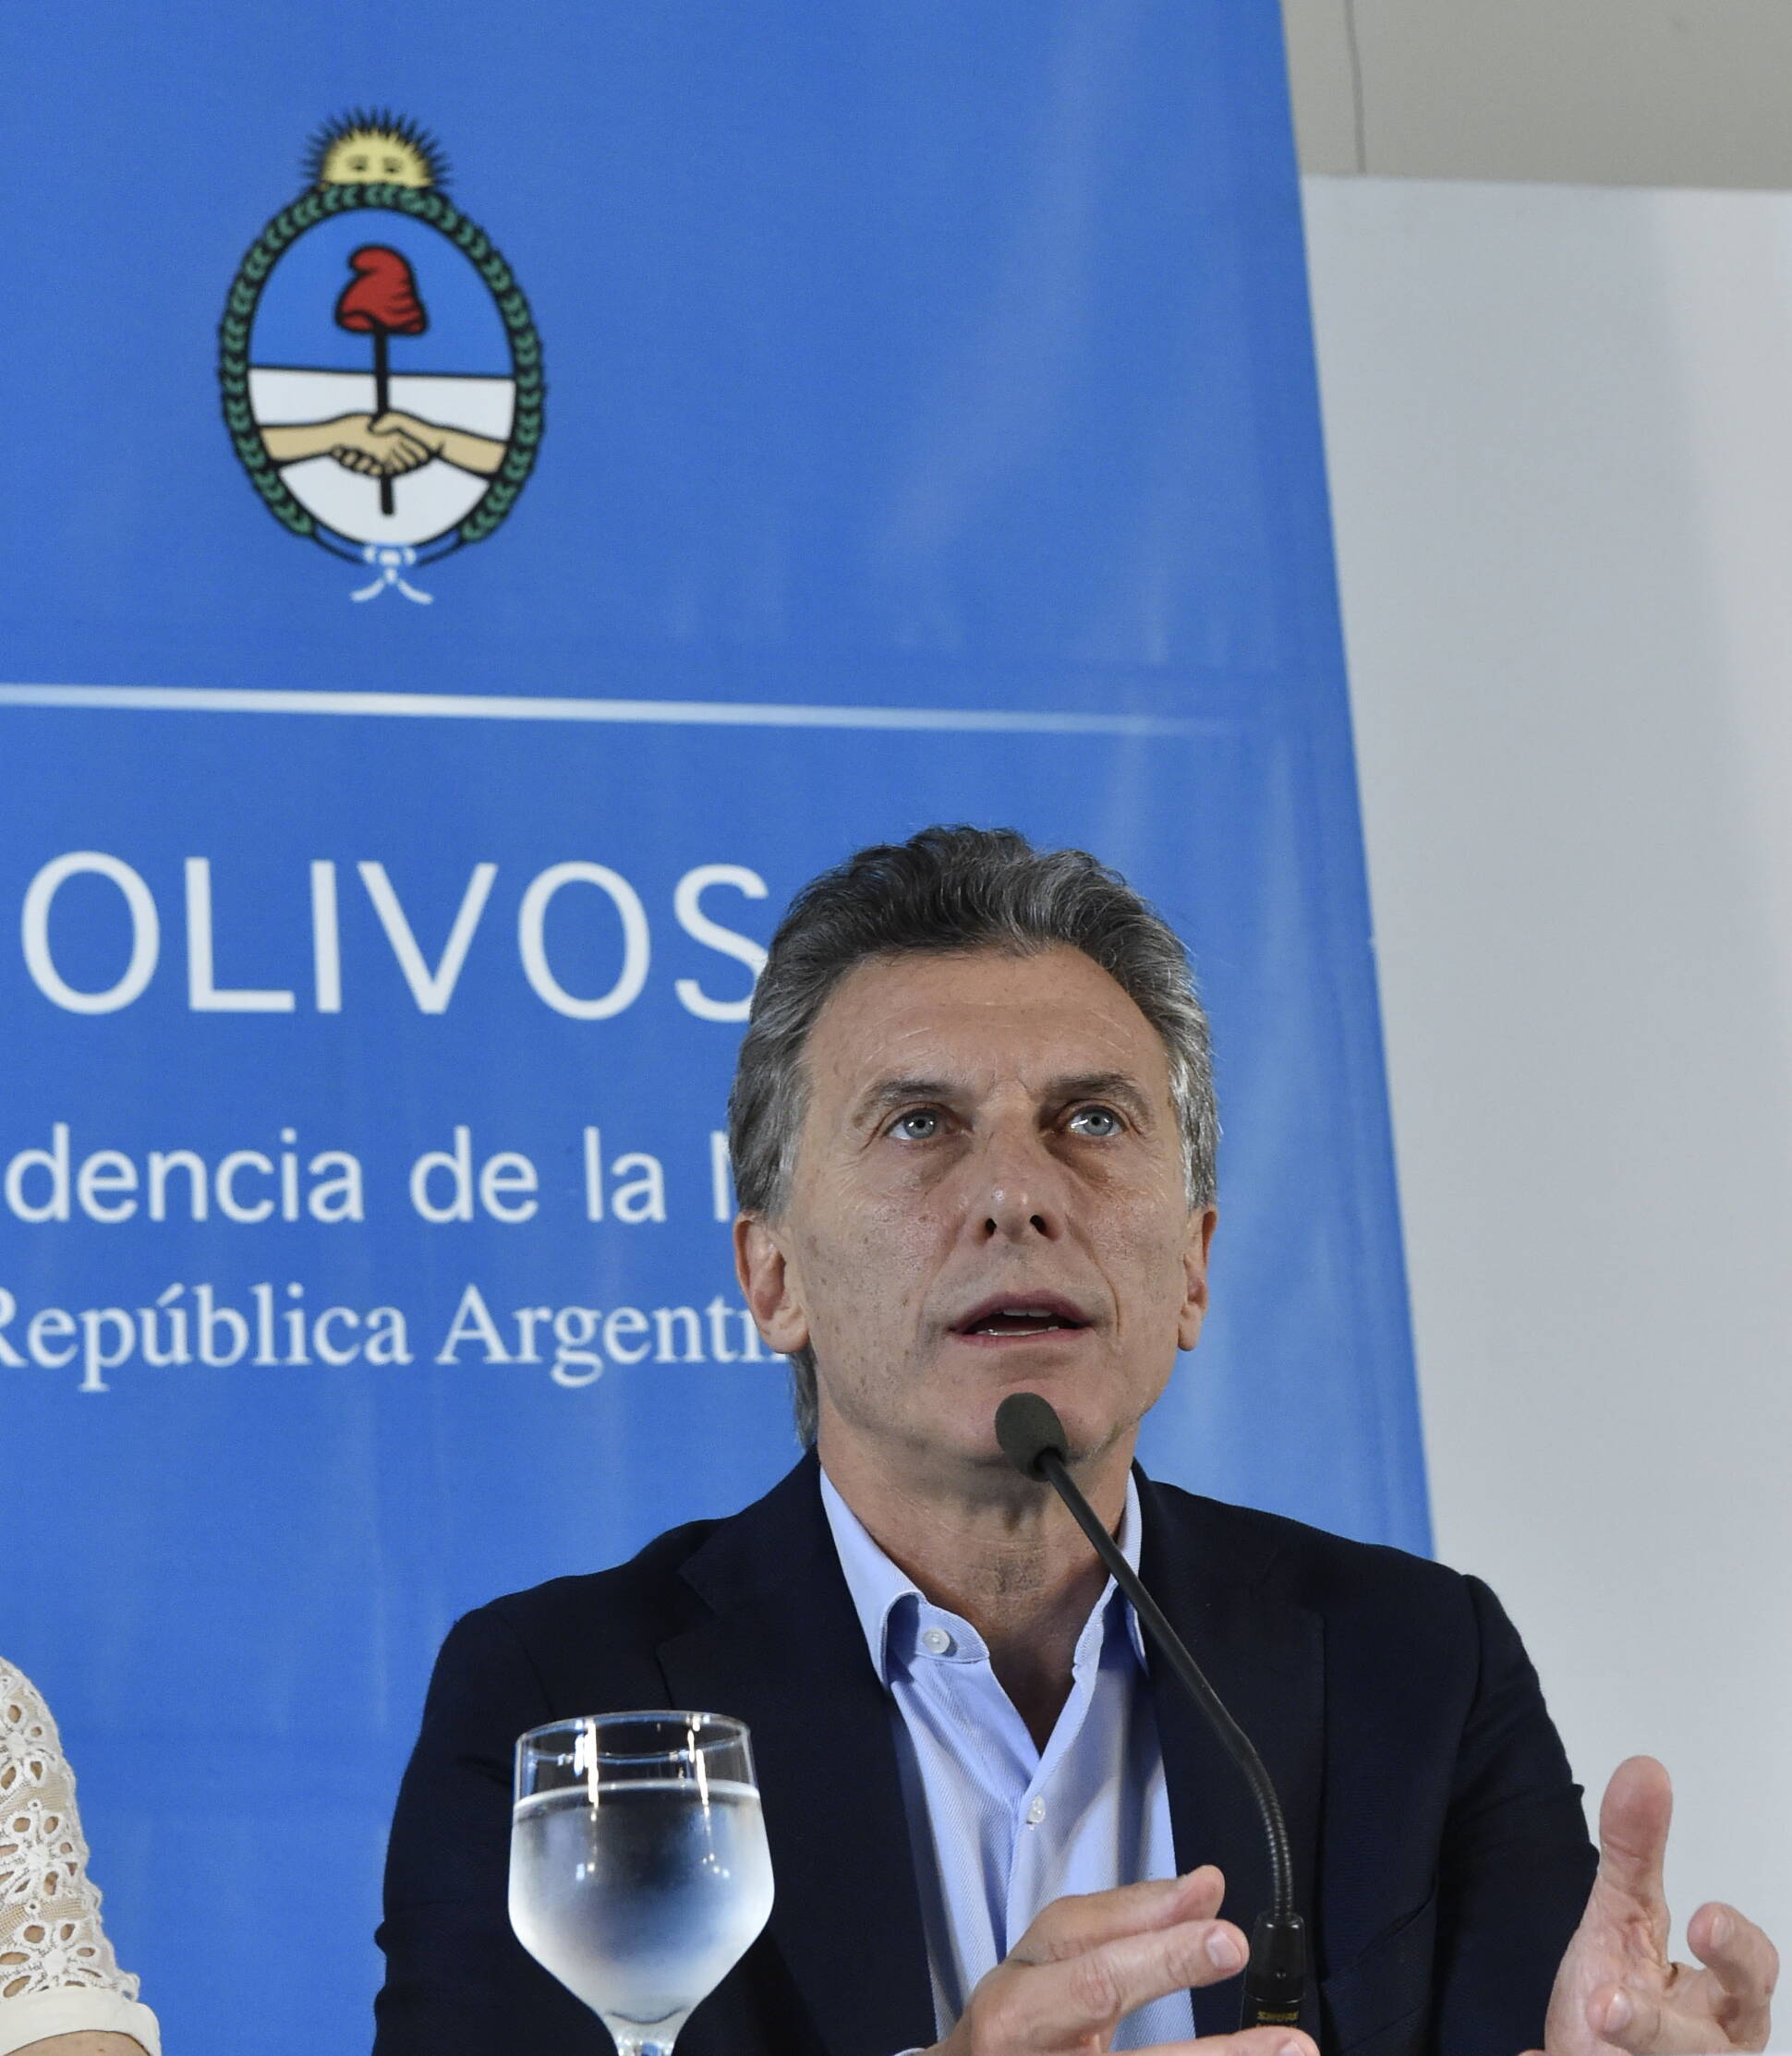 El Presidente Mauricio Macri ofrece una conferencia en Olivos tras reunión con gobernadores